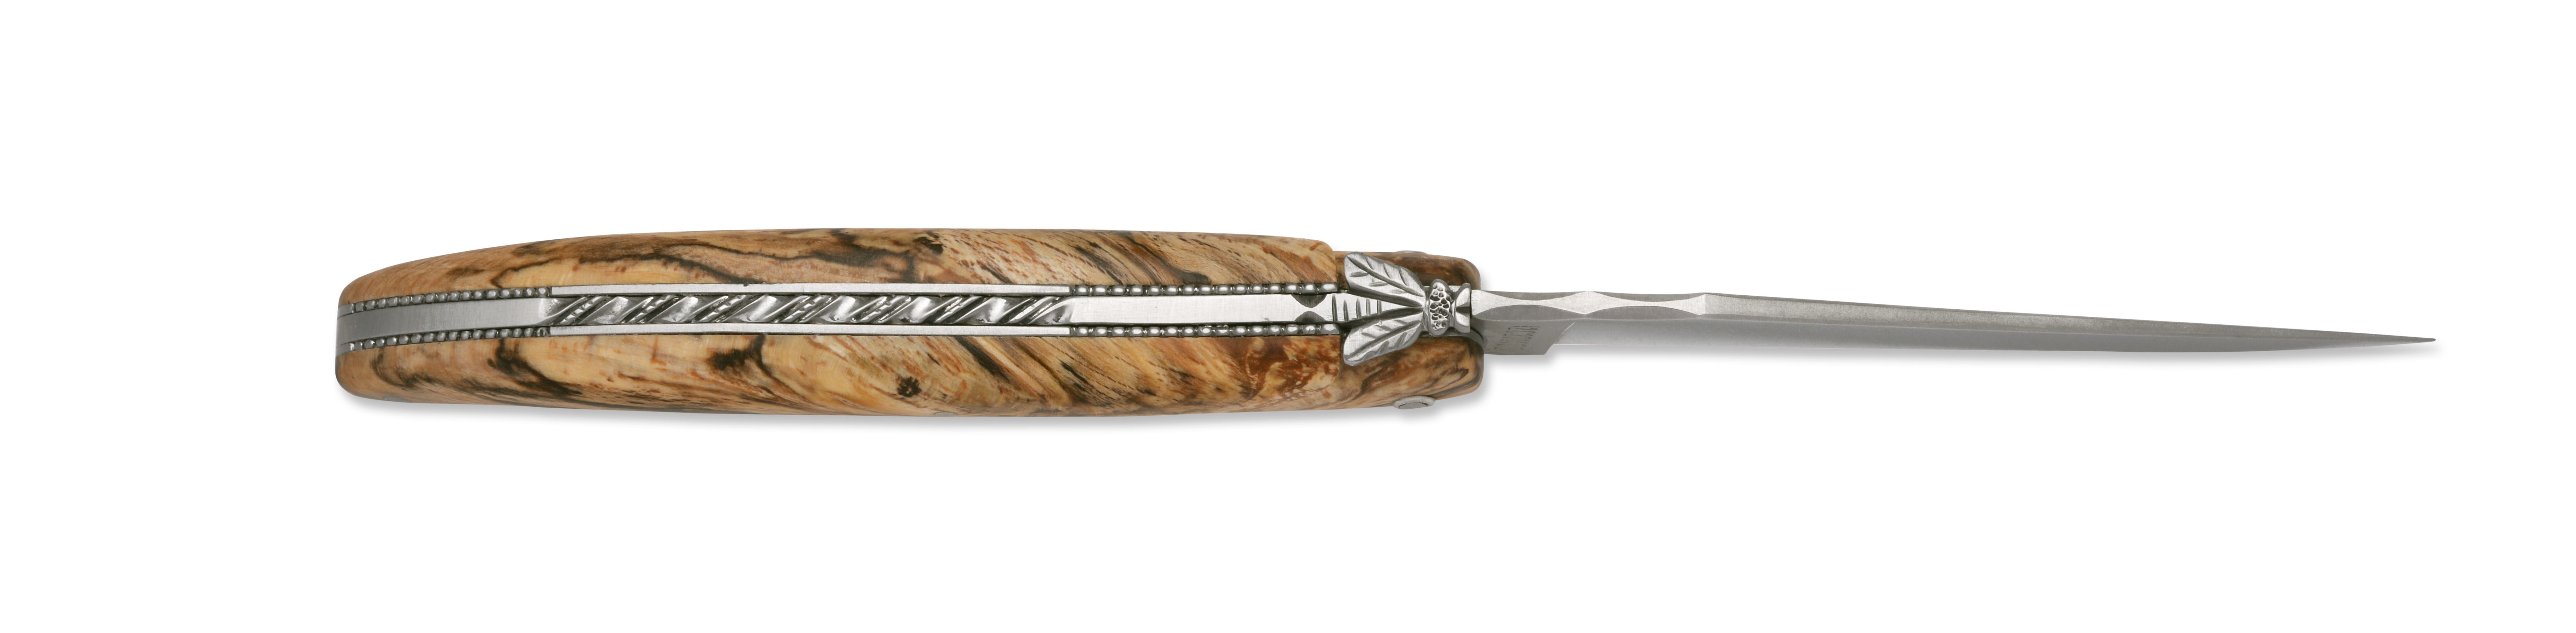 Visuel de Plein-manche Le Perlé - Couteaux pliants Couteau 12 cm